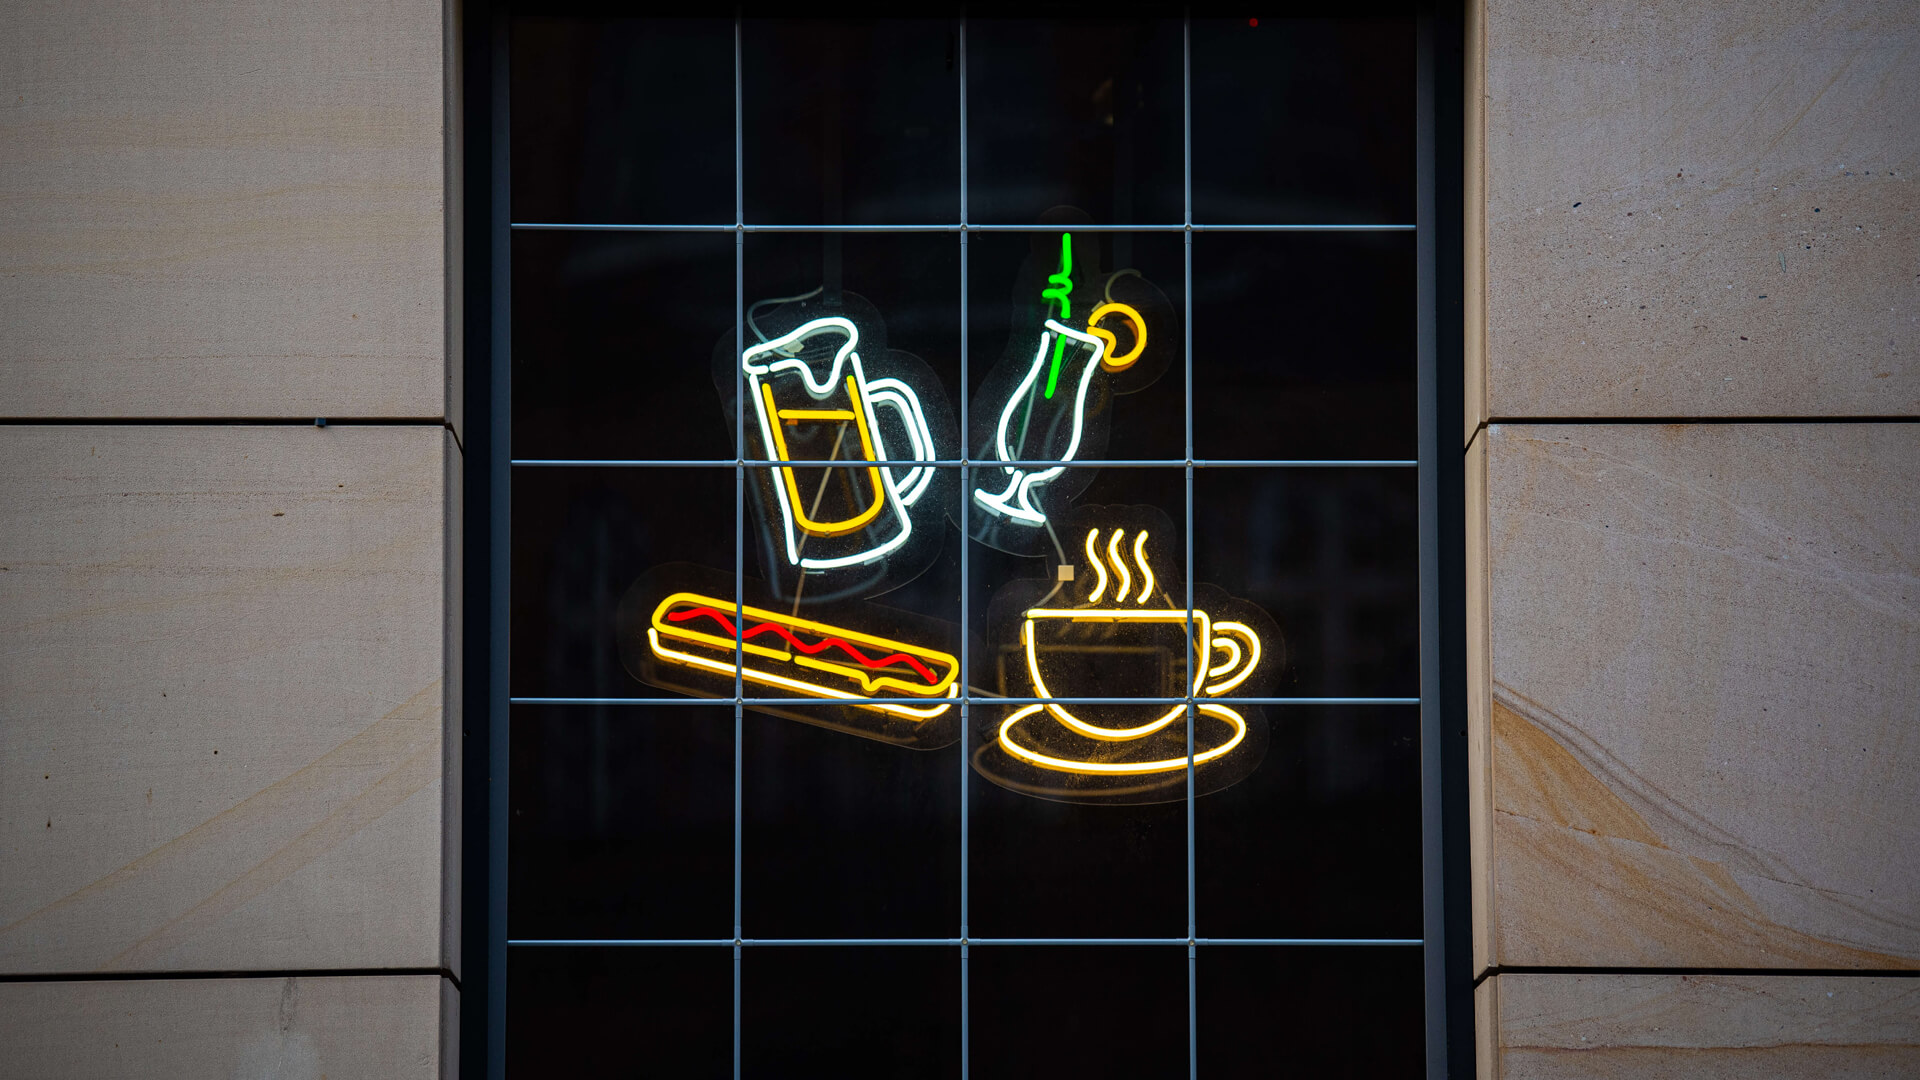 Pub Caffè - Insegna al neon verde del Pub Cafe con indicazioni per l'ingresso.